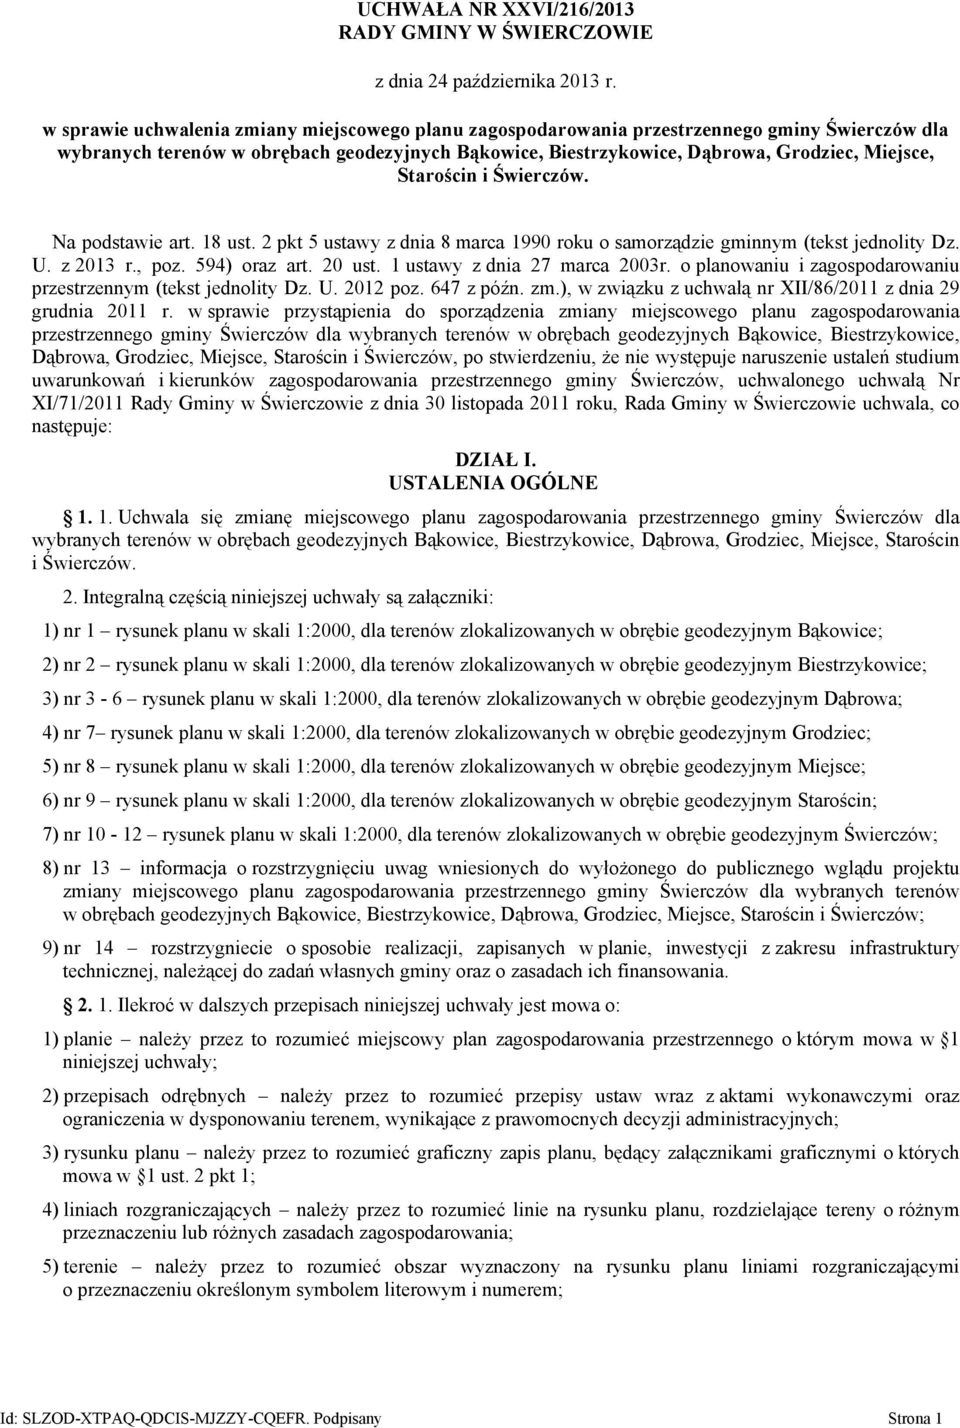 Starościn i Świerczów. Na podstawie art. 18 ust. 2 pkt 5 ustawy z dnia 8 marca 1990 roku o samorządzie gminnym (tekst jednolity Dz. U. z 2013 r., poz. 594) oraz art. 20 ust.